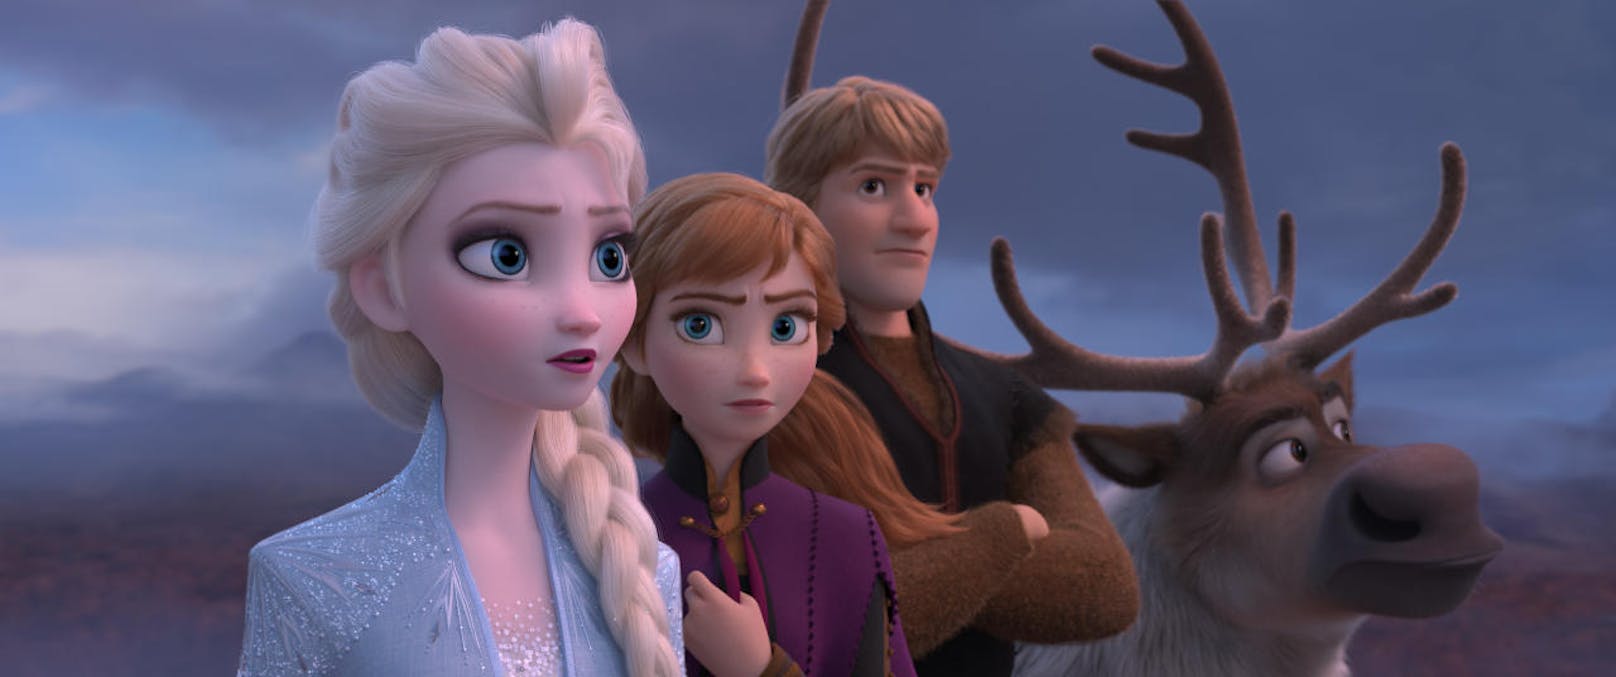 Im zweiten Teil der "Frozen"-Reihe haben die Schwestern Elsa und Anna nach den vergangenen Abenteuern wieder zueinander gefunden. Doch es warten neue Herausforderungen auf sie. Gemeinsam mit Kristoff und dem tollpatschigen Schneemann Olaf wollen sie mehr über ein altes Rätsel ihres Königreichs erfahren. <a href="https://www.heute.at/s/die-eiskonigin-2-frozen-kino-review-57648089">Das Review zu "Frozen II" findet ihr hier.</a>